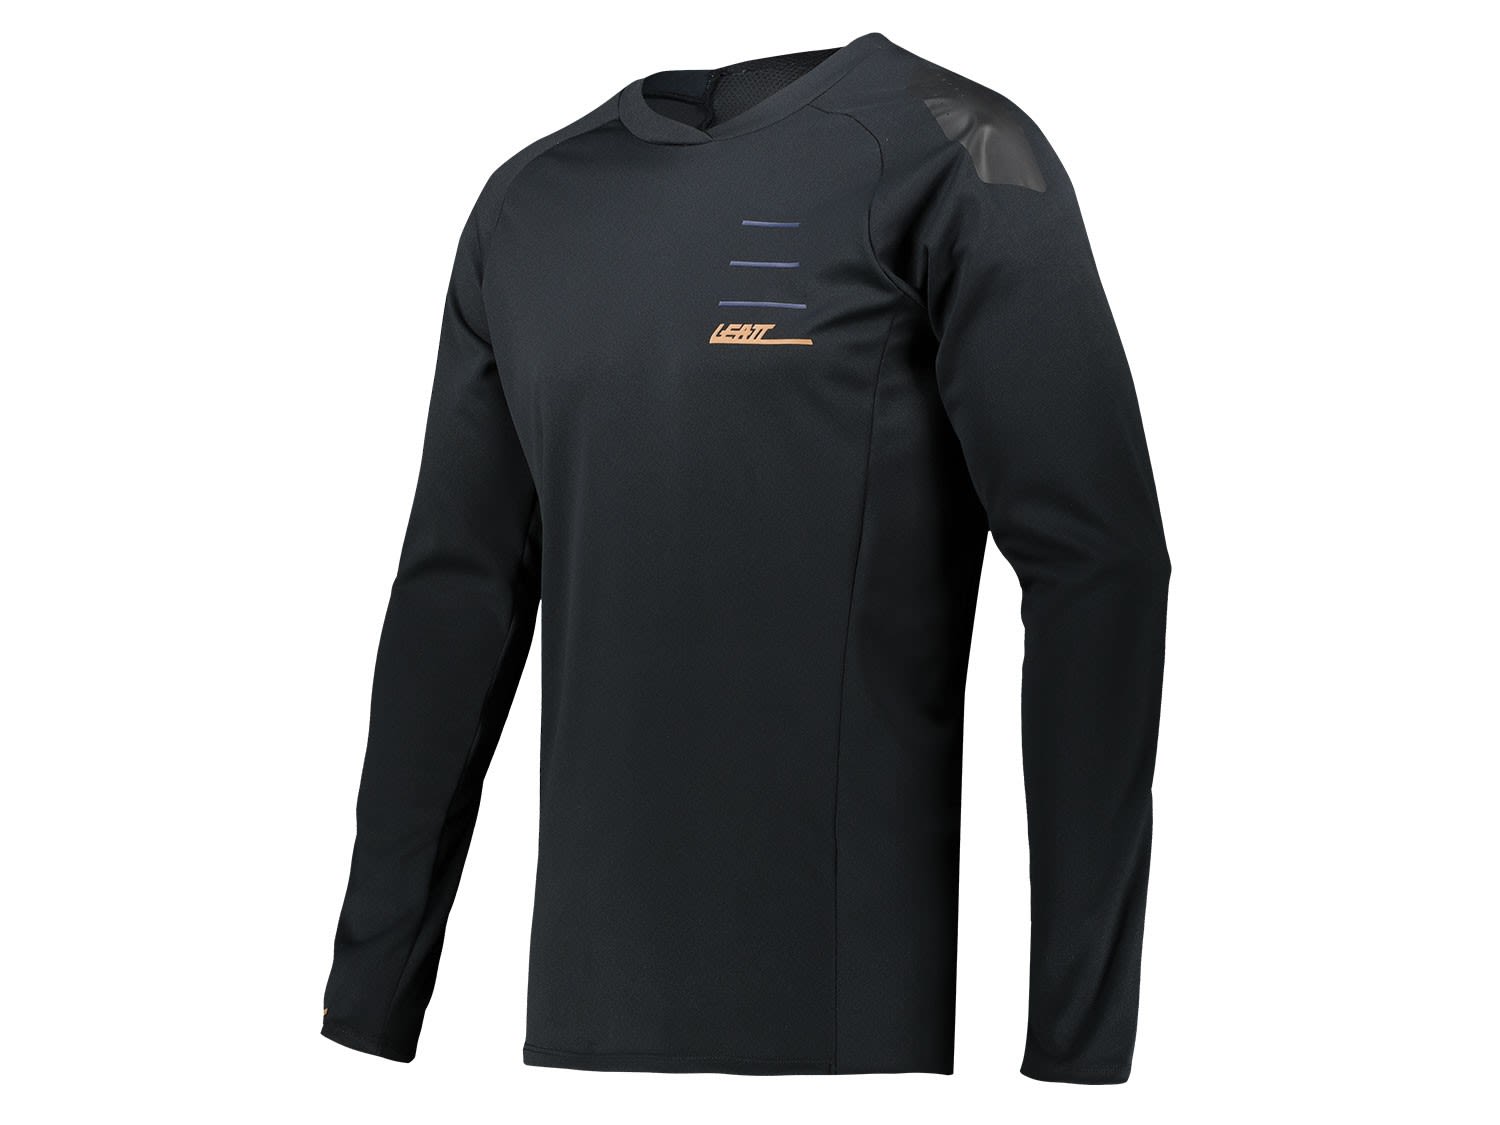 Leatt MTB All Mountain 5-0 Jersey Schwarz- Male Langarm-Shirts- Grsse S - Farbe Black unter Leatt